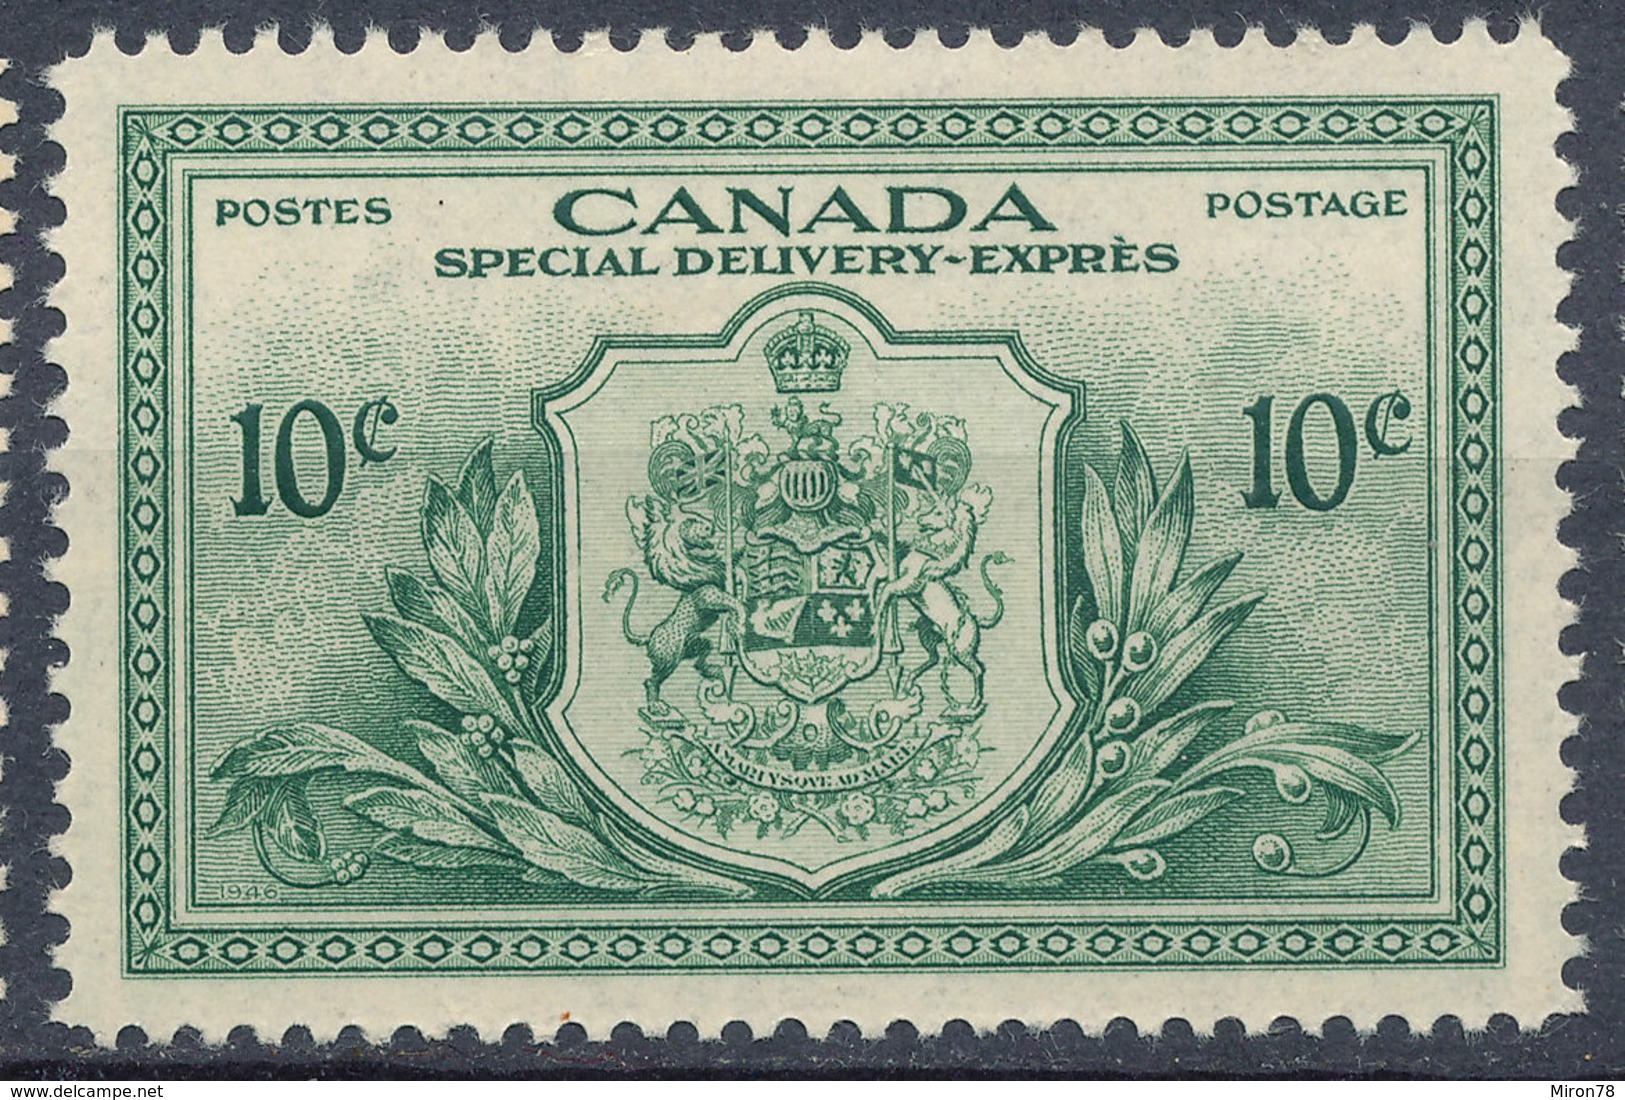 Stamp Canada 1946 Mint - Nuovi